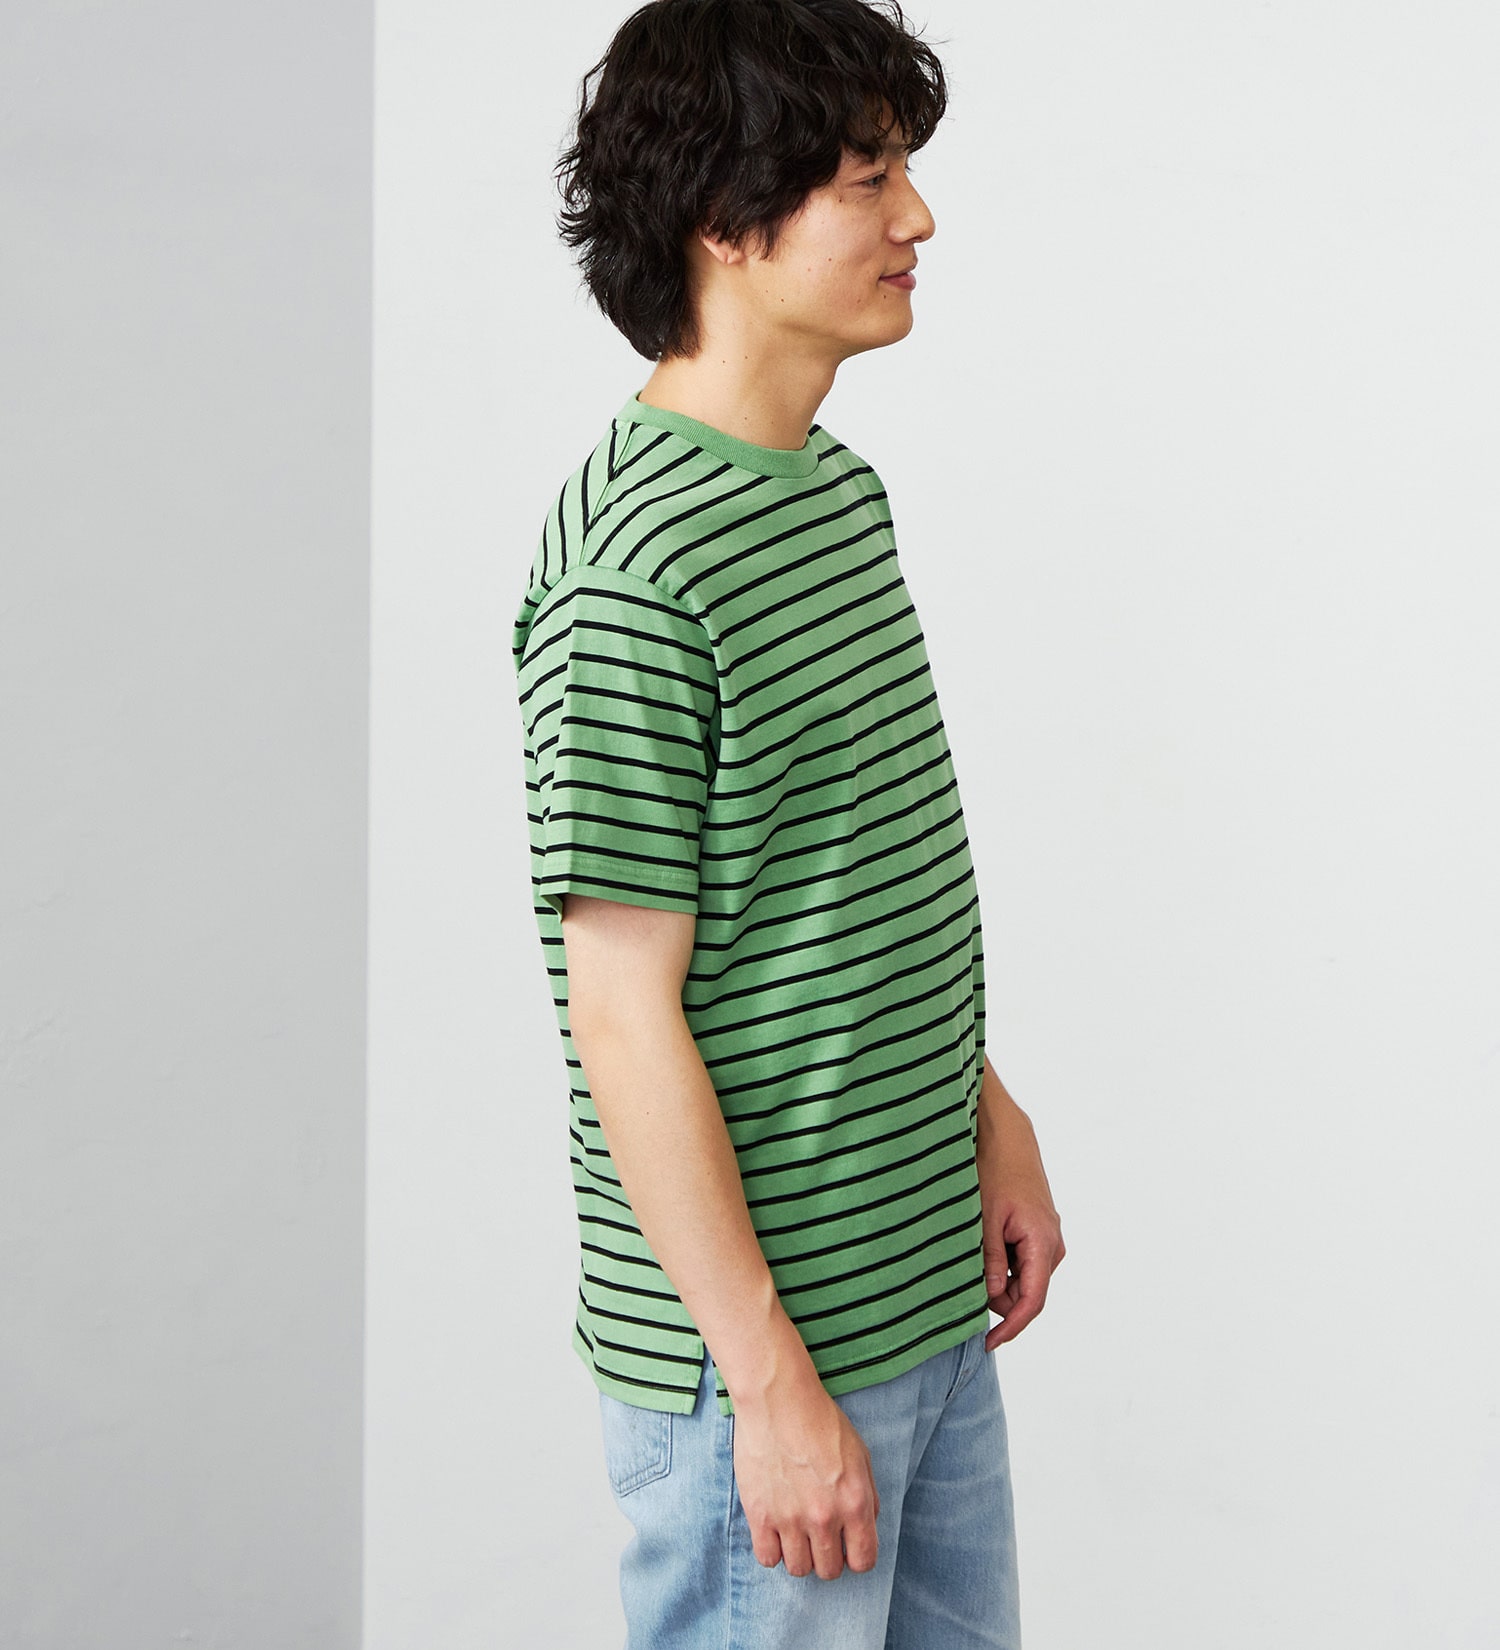 EDWIN(エドウイン)のピグメント加工ボーダーTシャツ|トップス/Tシャツ/カットソー/メンズ|グリーン